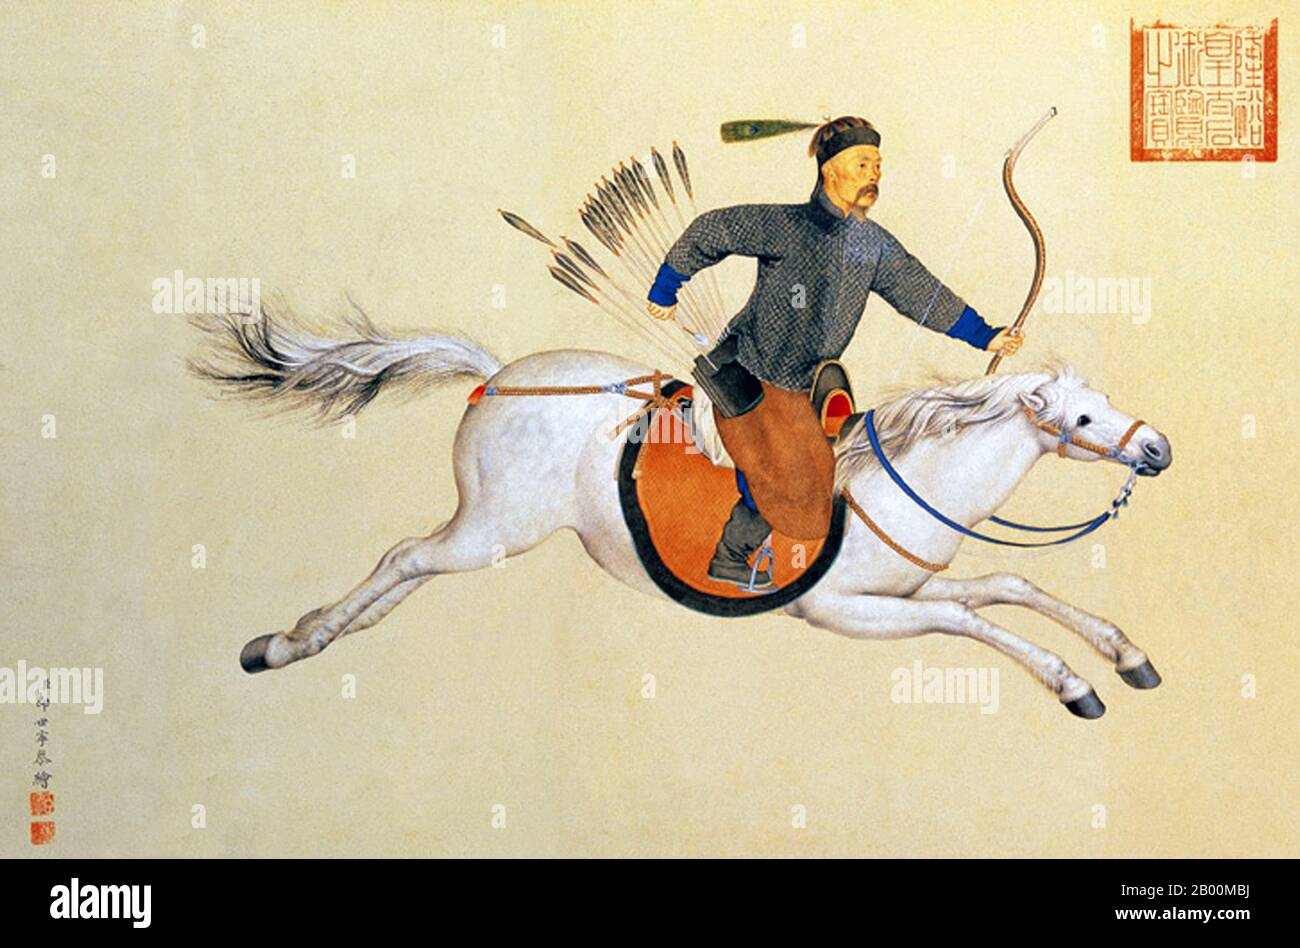 China: Mandschu General Machang Reiten im vollen Galopp auf weißem Pferd mit Bogen und Pfeilen, Herrschaft von Kaiser Qianlong, c.. 1765, von Giuseppe Castiglione (1688-1766). Ferghana Pferde waren eine der frühesten großen Importe Chinas, die ihren Ursprung in einem Gebiet in Zentralasien hatten. Dayuan, nördlich von Baktrien, war eine Nation, die im Ferghana-Tal des heutigen Zentralasiens zentriert war, und sogar schon in der Han-Dynastie projizierte China seine militärische Macht auf dieses Gebiet. Das imperiale Regime verlangte Ferghana-Pferde und importierte so viele von ihnen, dass die Herrscher von Ferghana ihre Grenzen für einen solchen Handel schlossen. Stockfoto